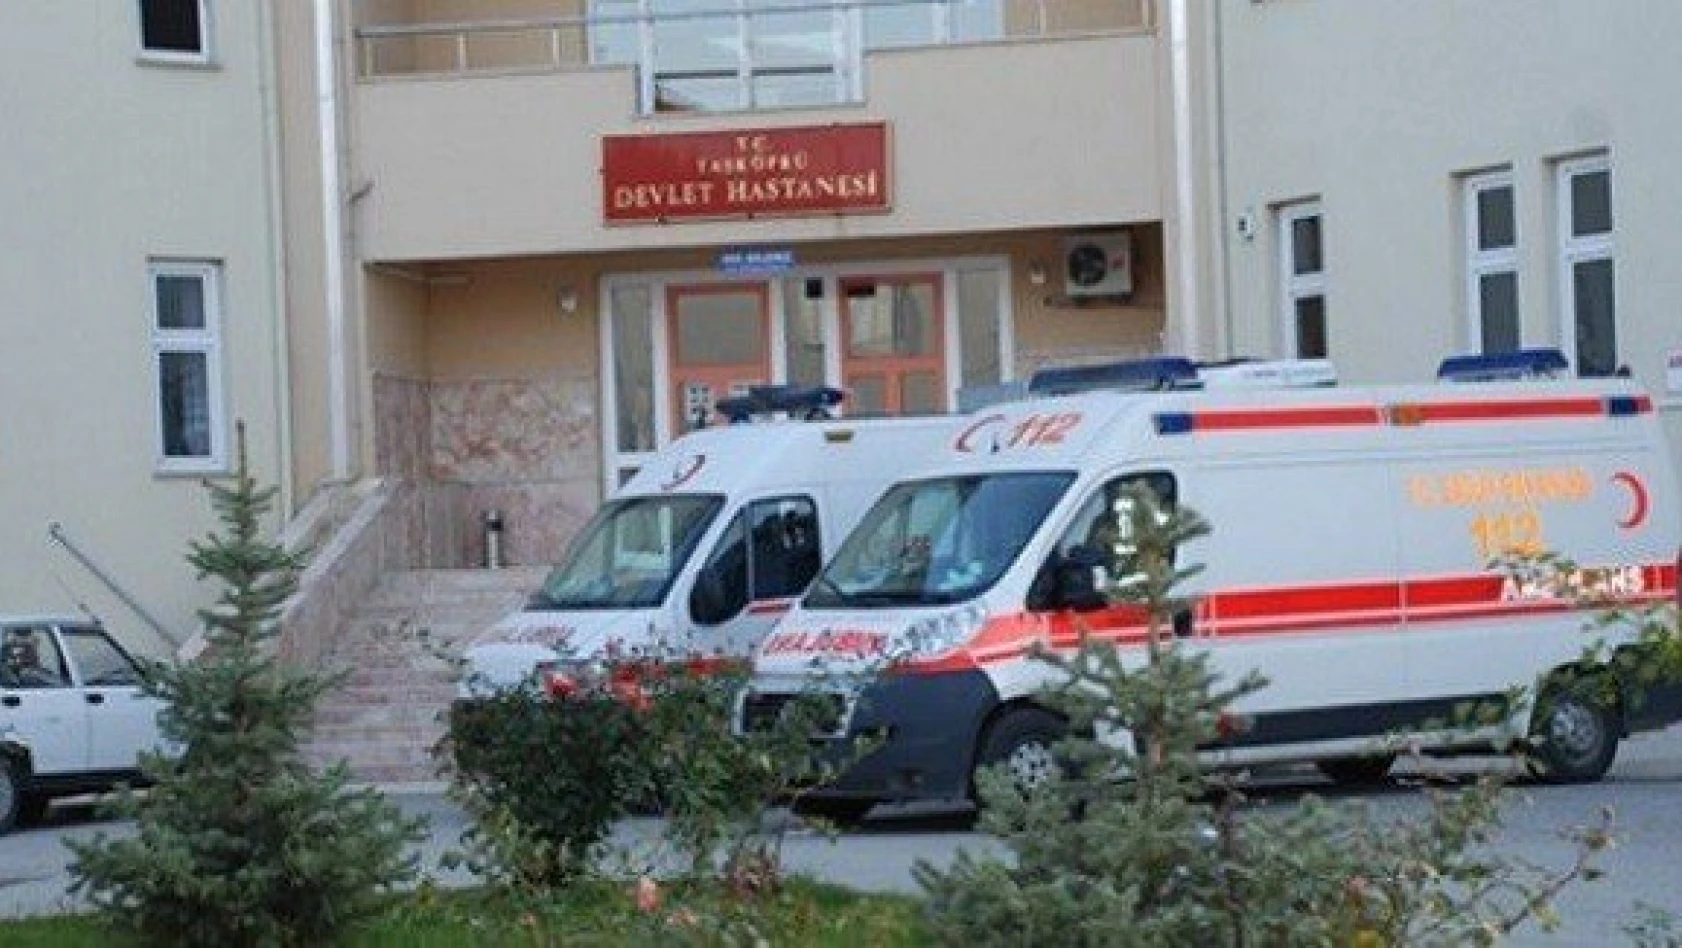 Taşköprü Devlet Hastanesi'nde 5 personel açığa alındı